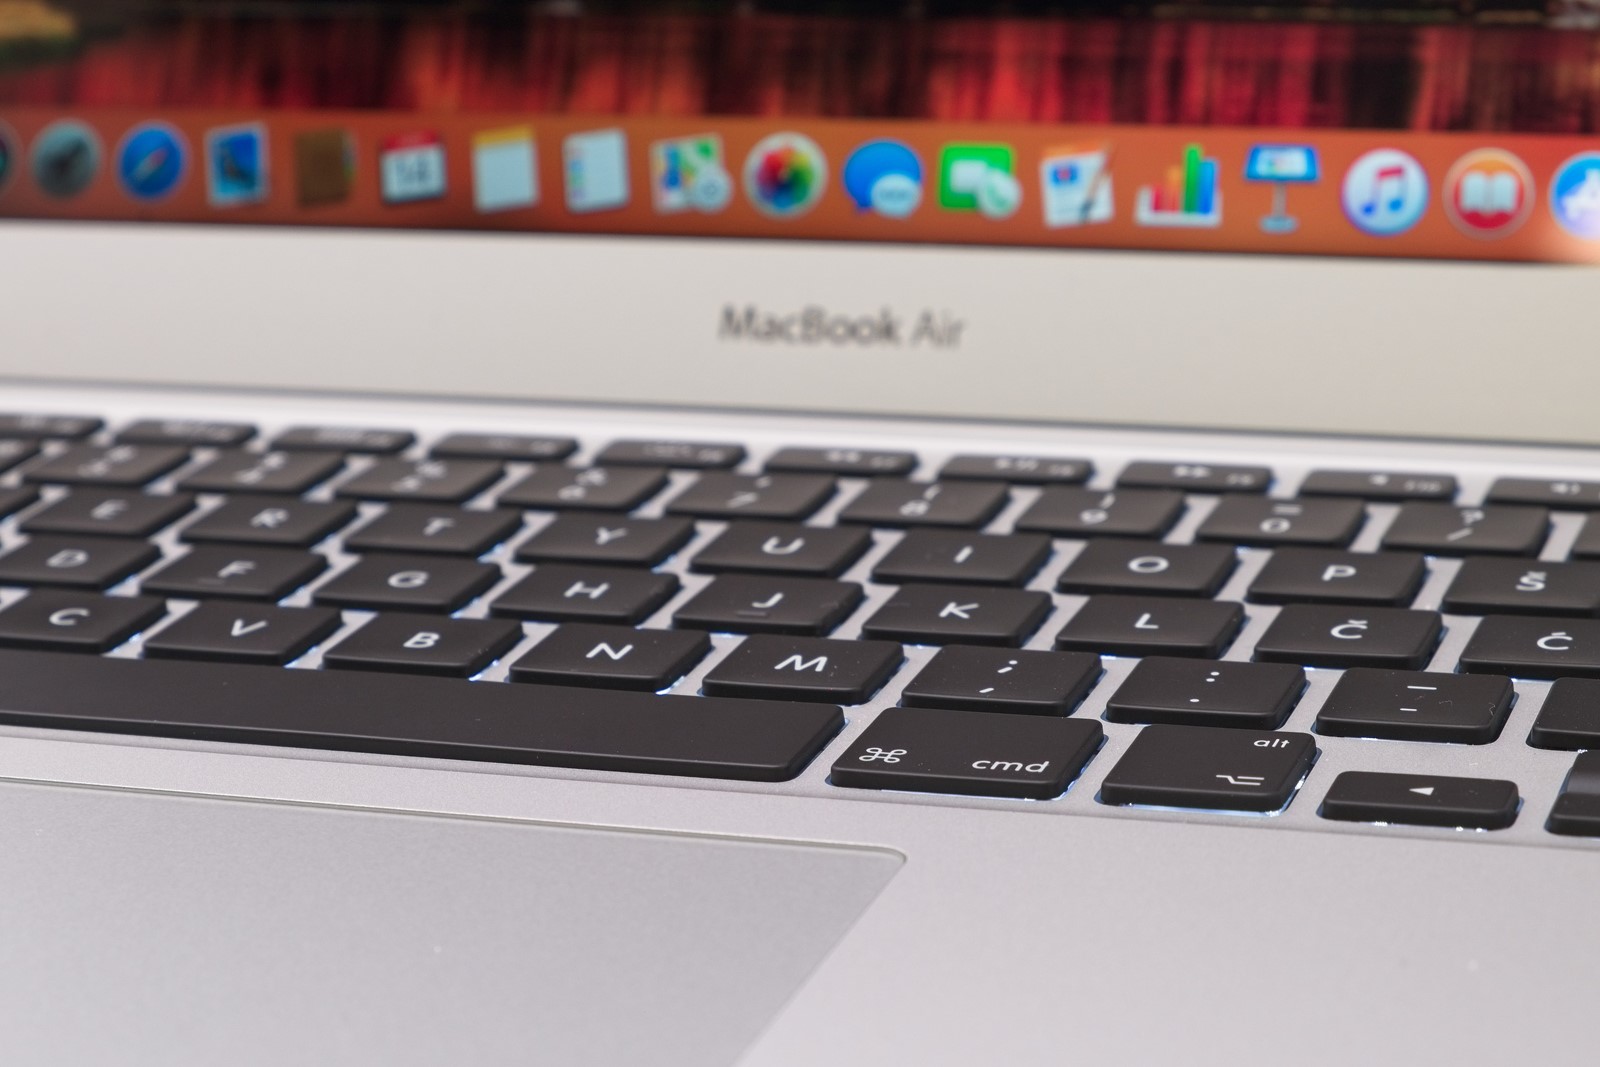 Apple MacBook Air 13 (2018) - Prauzor svih ultrabook računala danas je  jeftiniji nego ikada - Recenzije @ Bug.hr